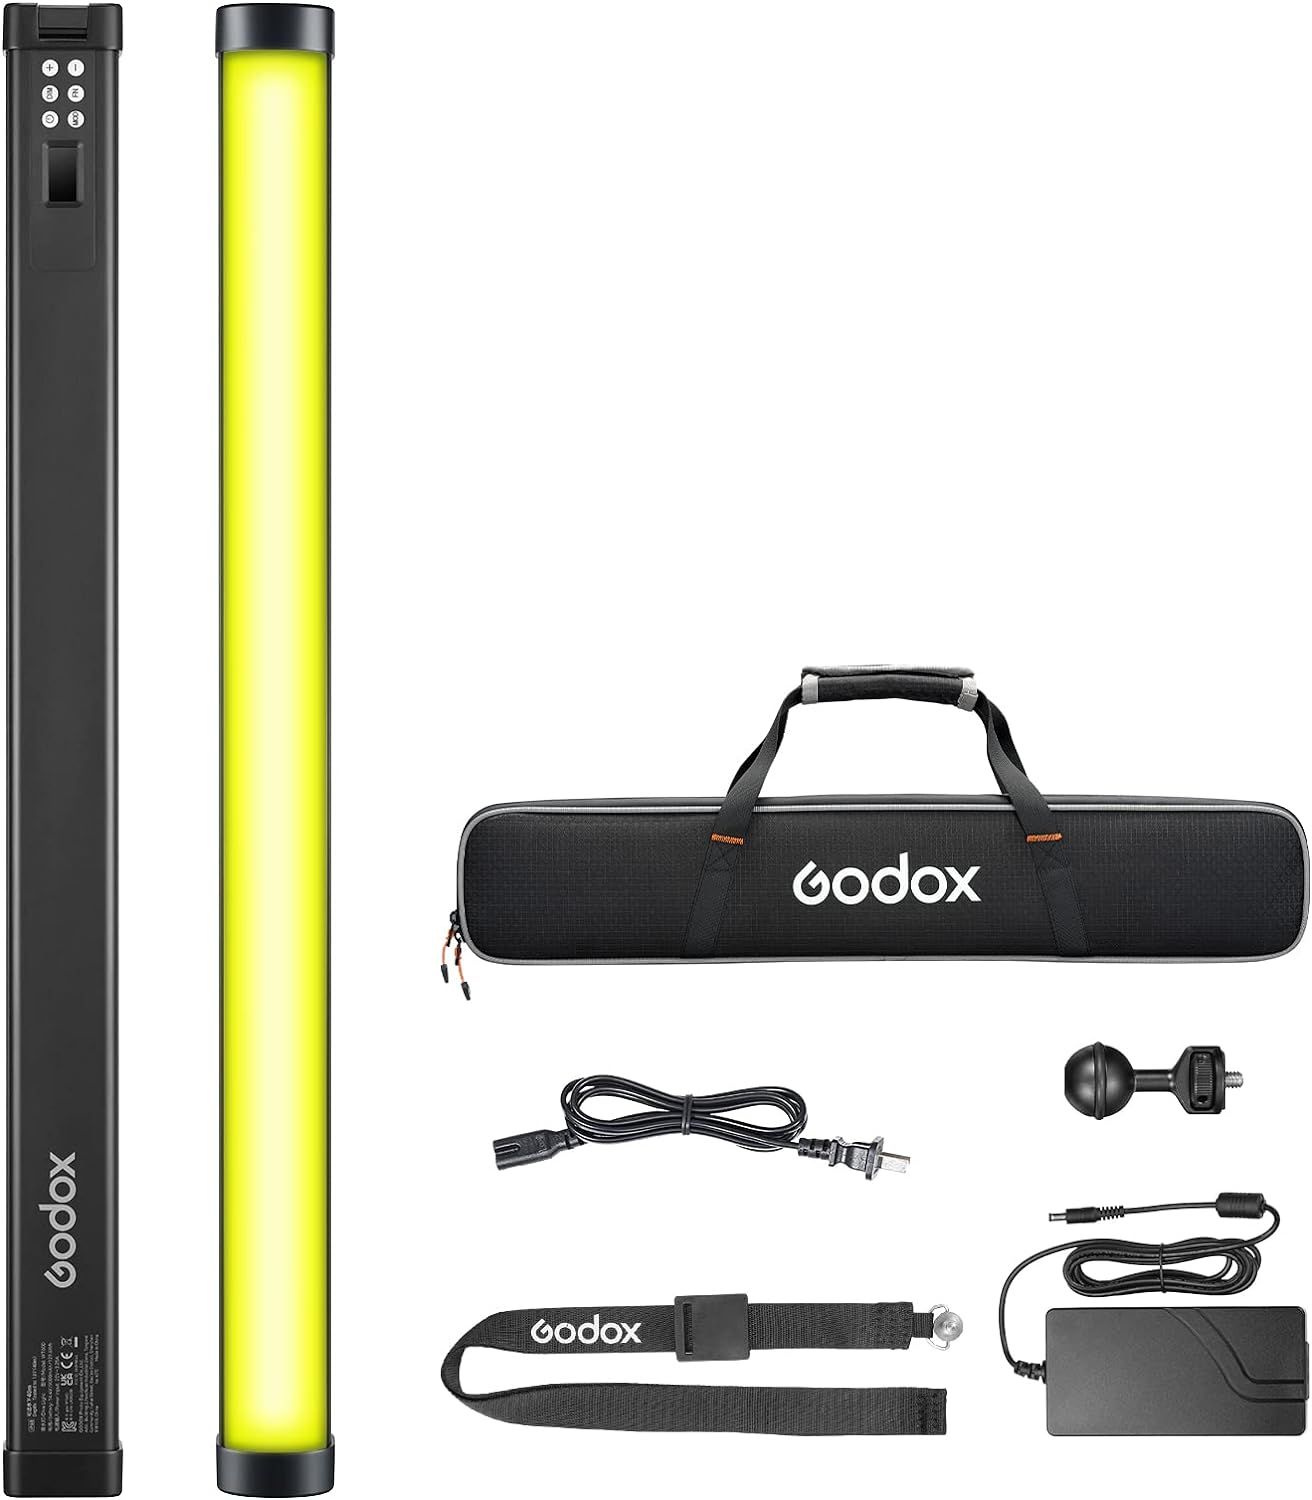 Світло Godox WT60R RGB Dive Tube Light (25") 64 cm